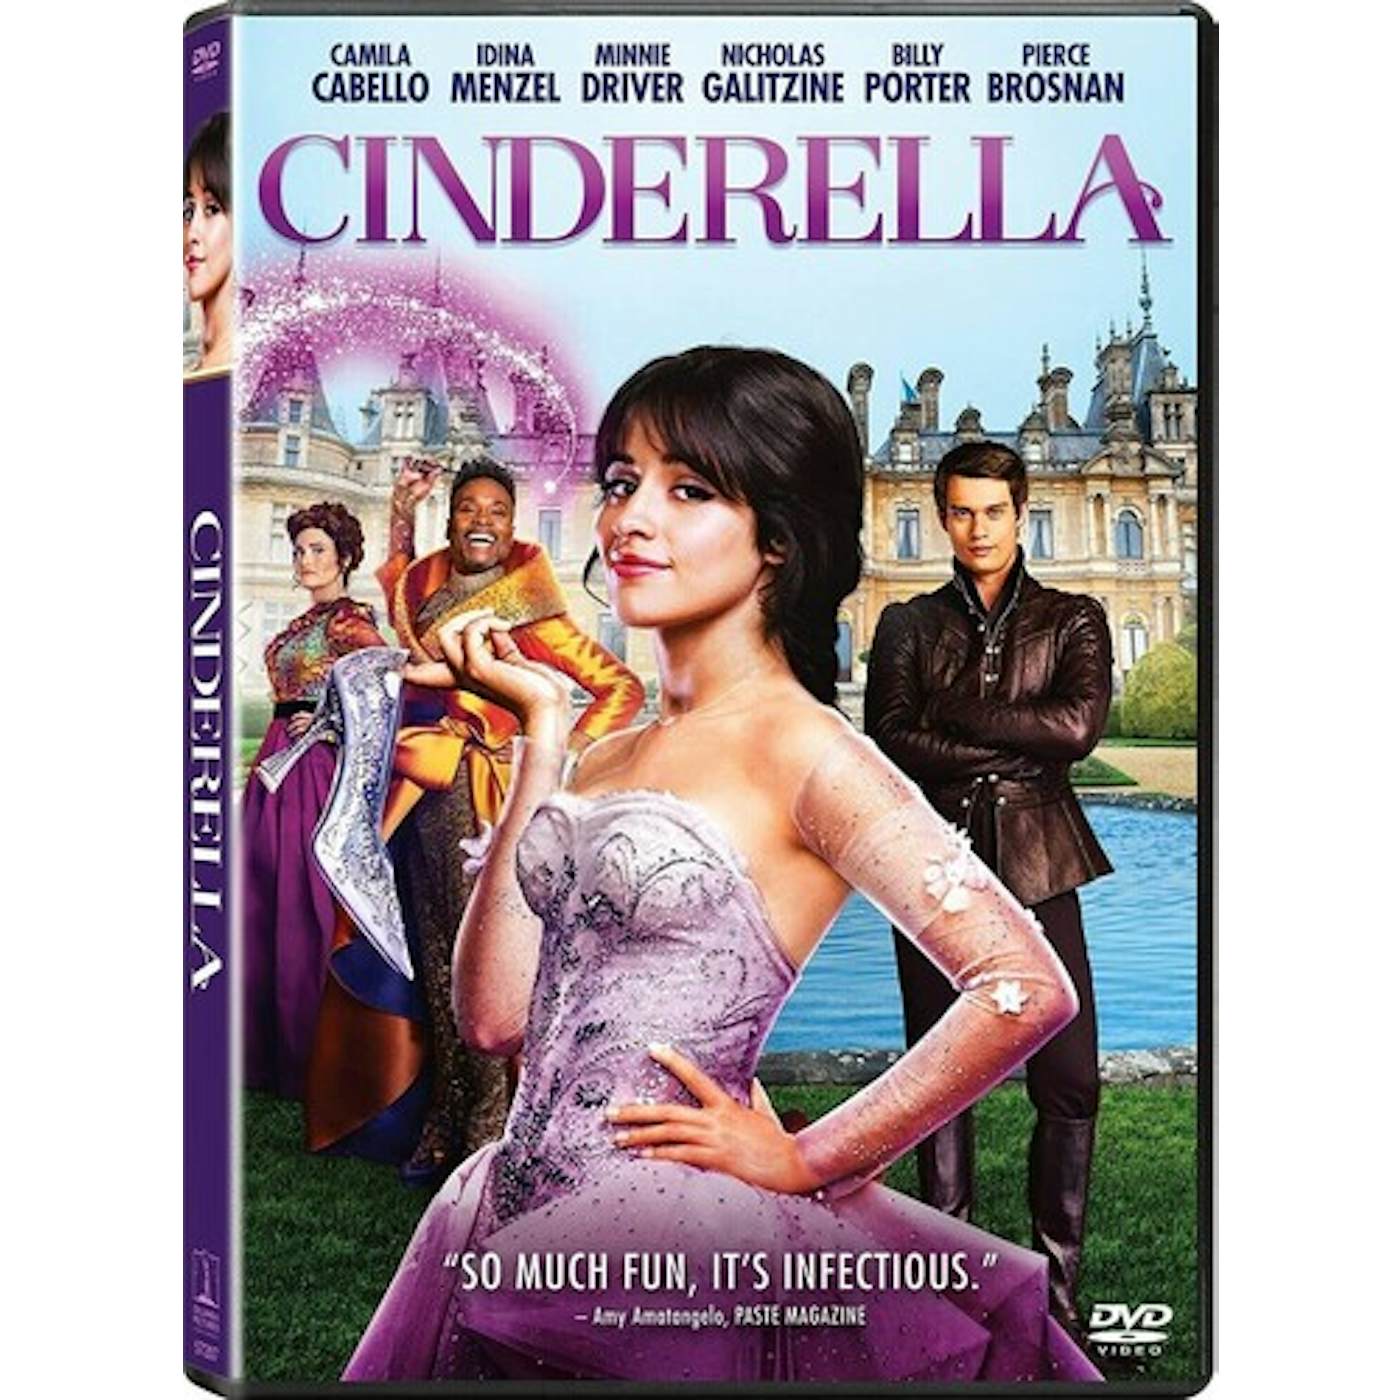 CINDERELLA DVD